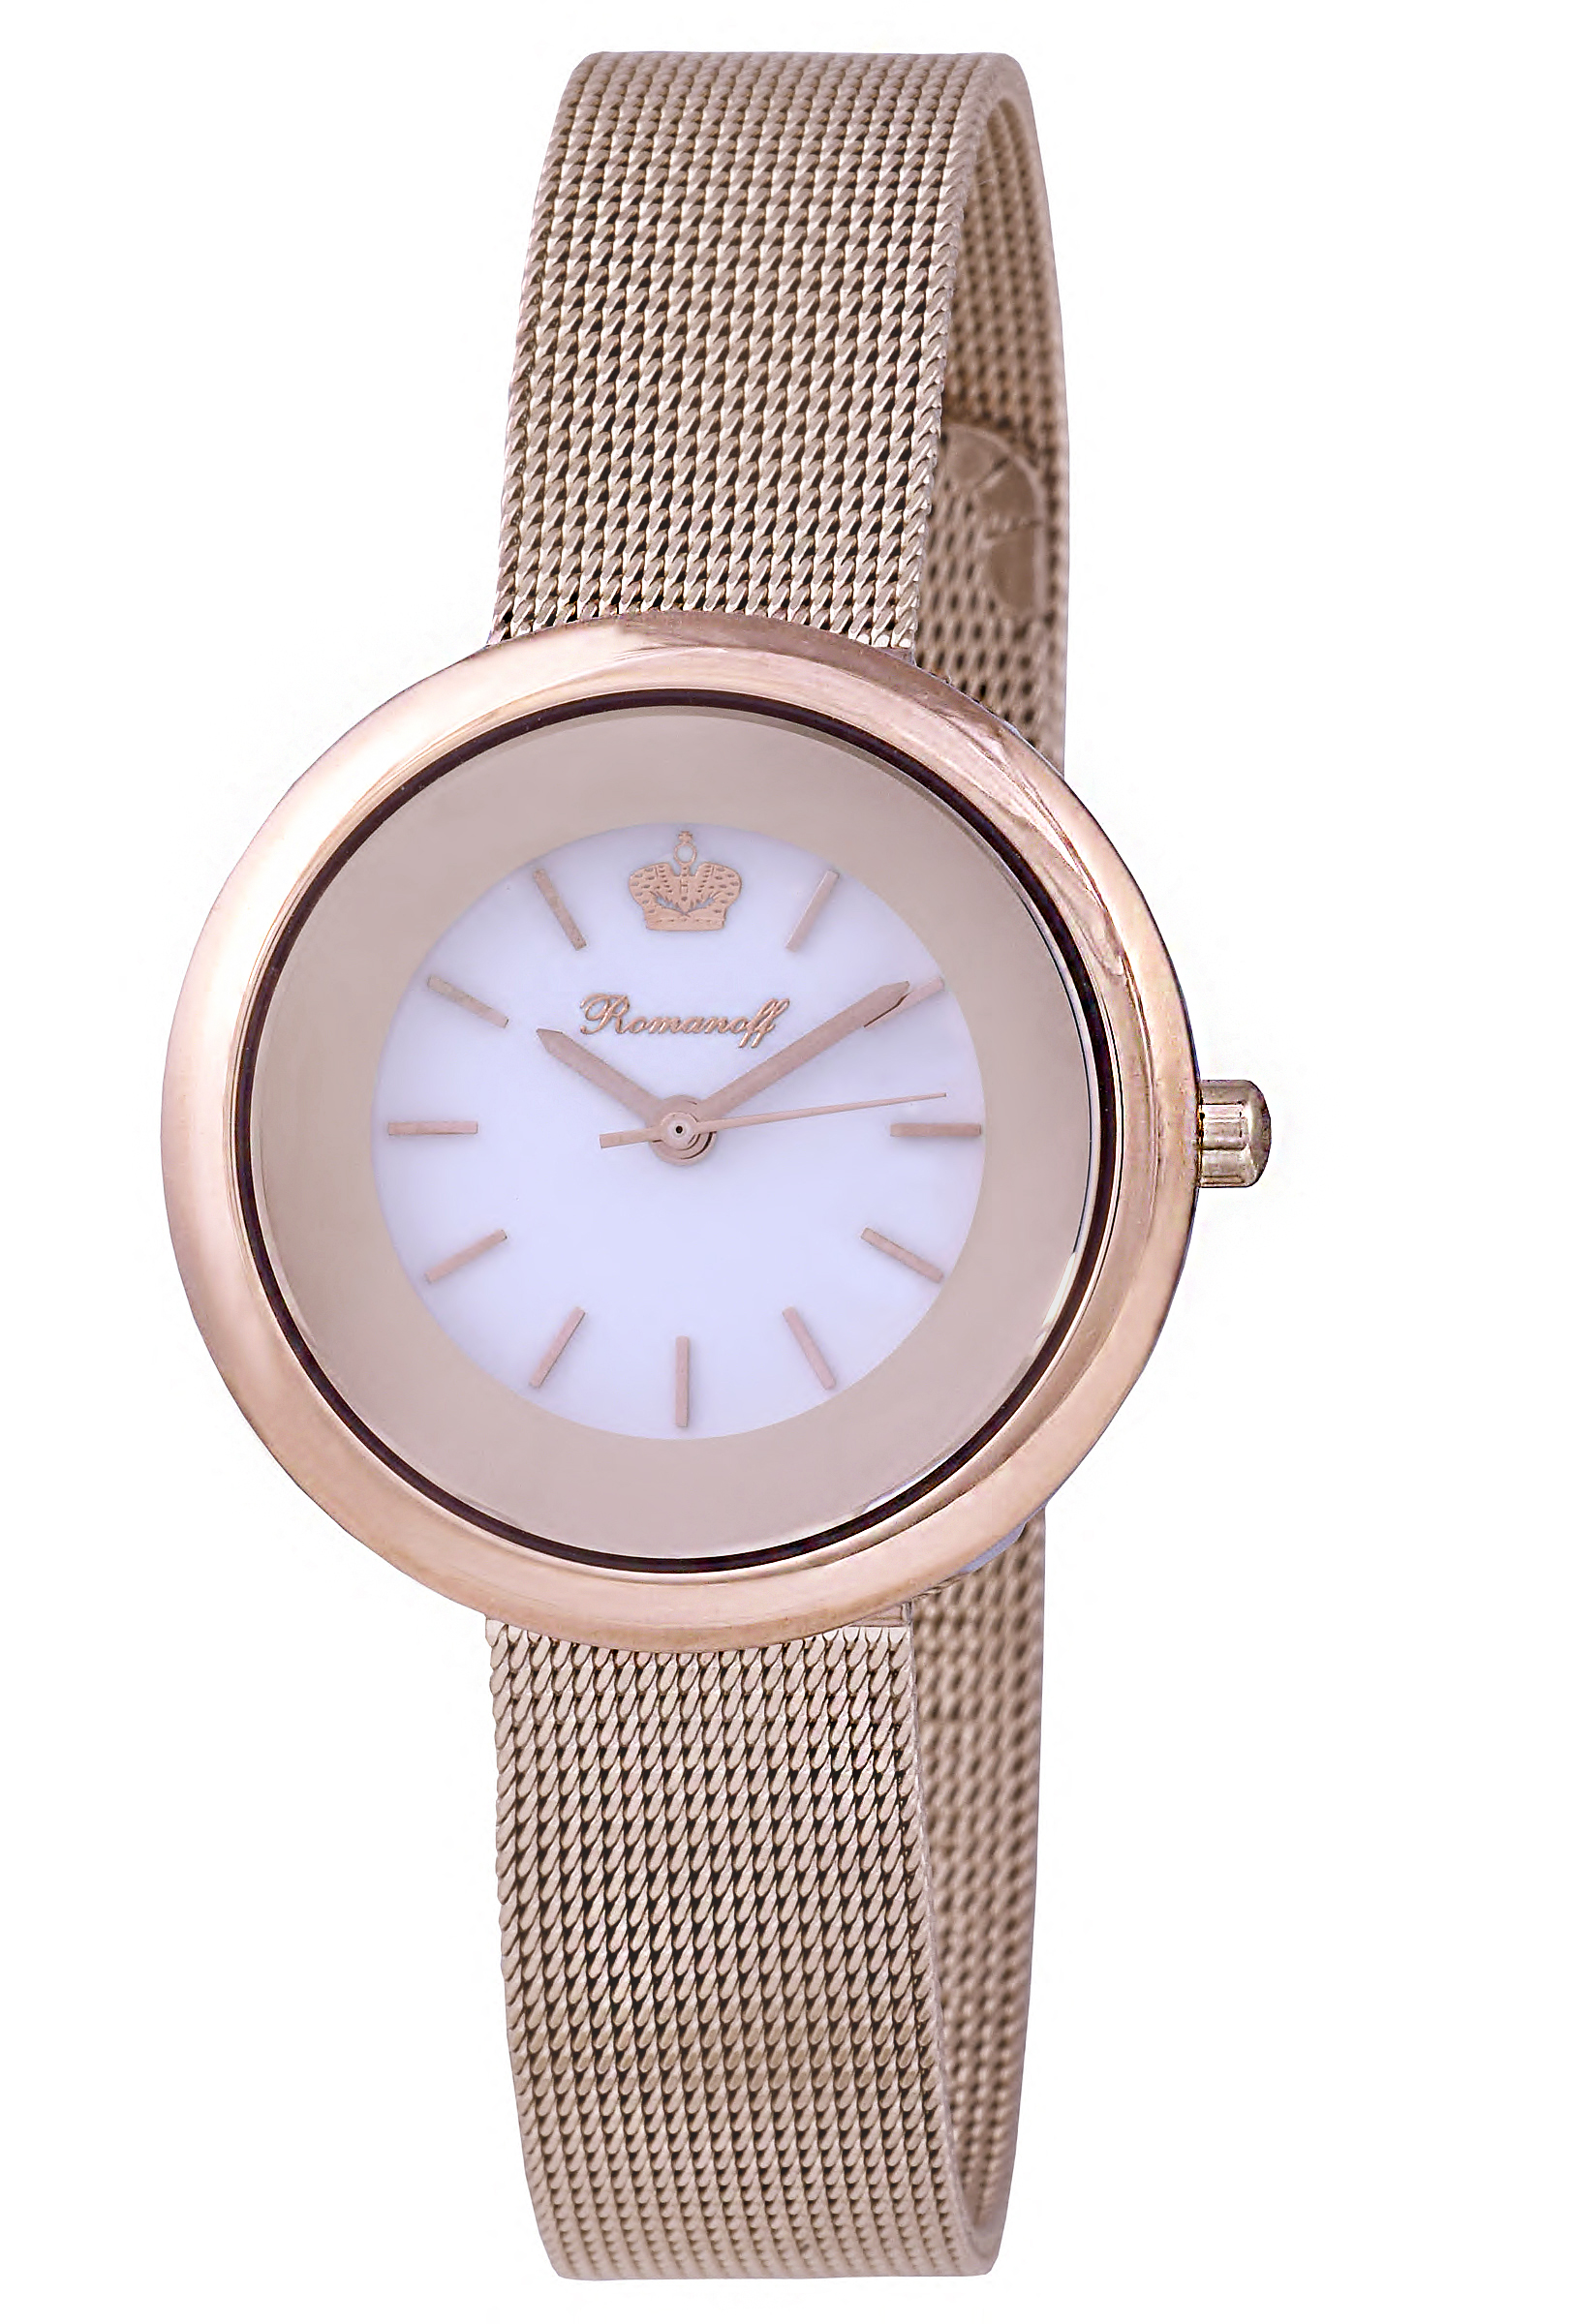 Фото часов Часы для пары Romanoff модель 10659B1 и браслет